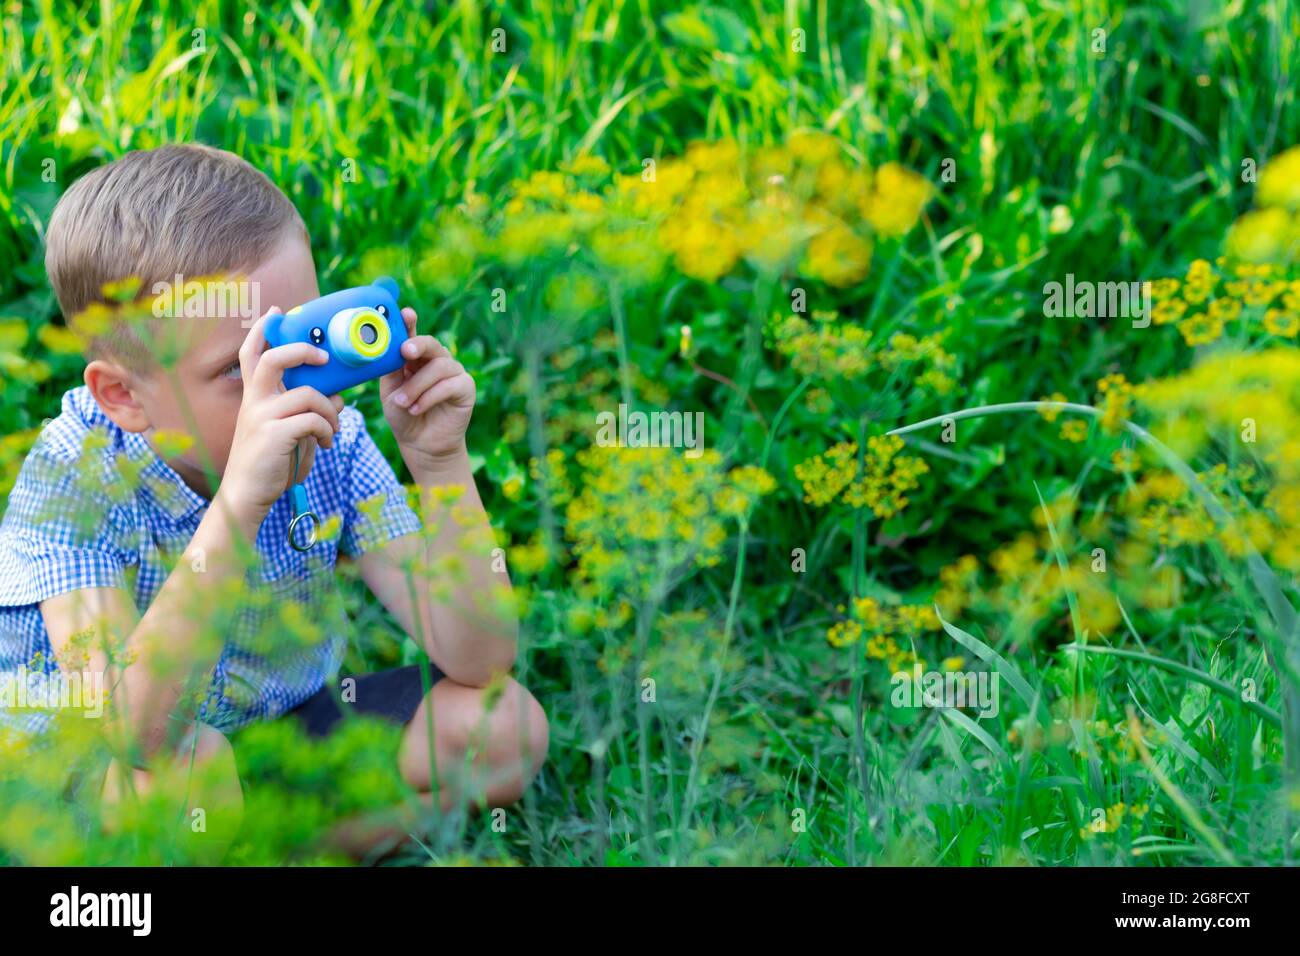 Ein süßer Vorschuljunge mit einer hübschen Frisur in einem blauen Hemd fotografiert an einem heißen Sommertag grüne Pflanzen. Selektiver Fokus. Hochformat Stockfoto